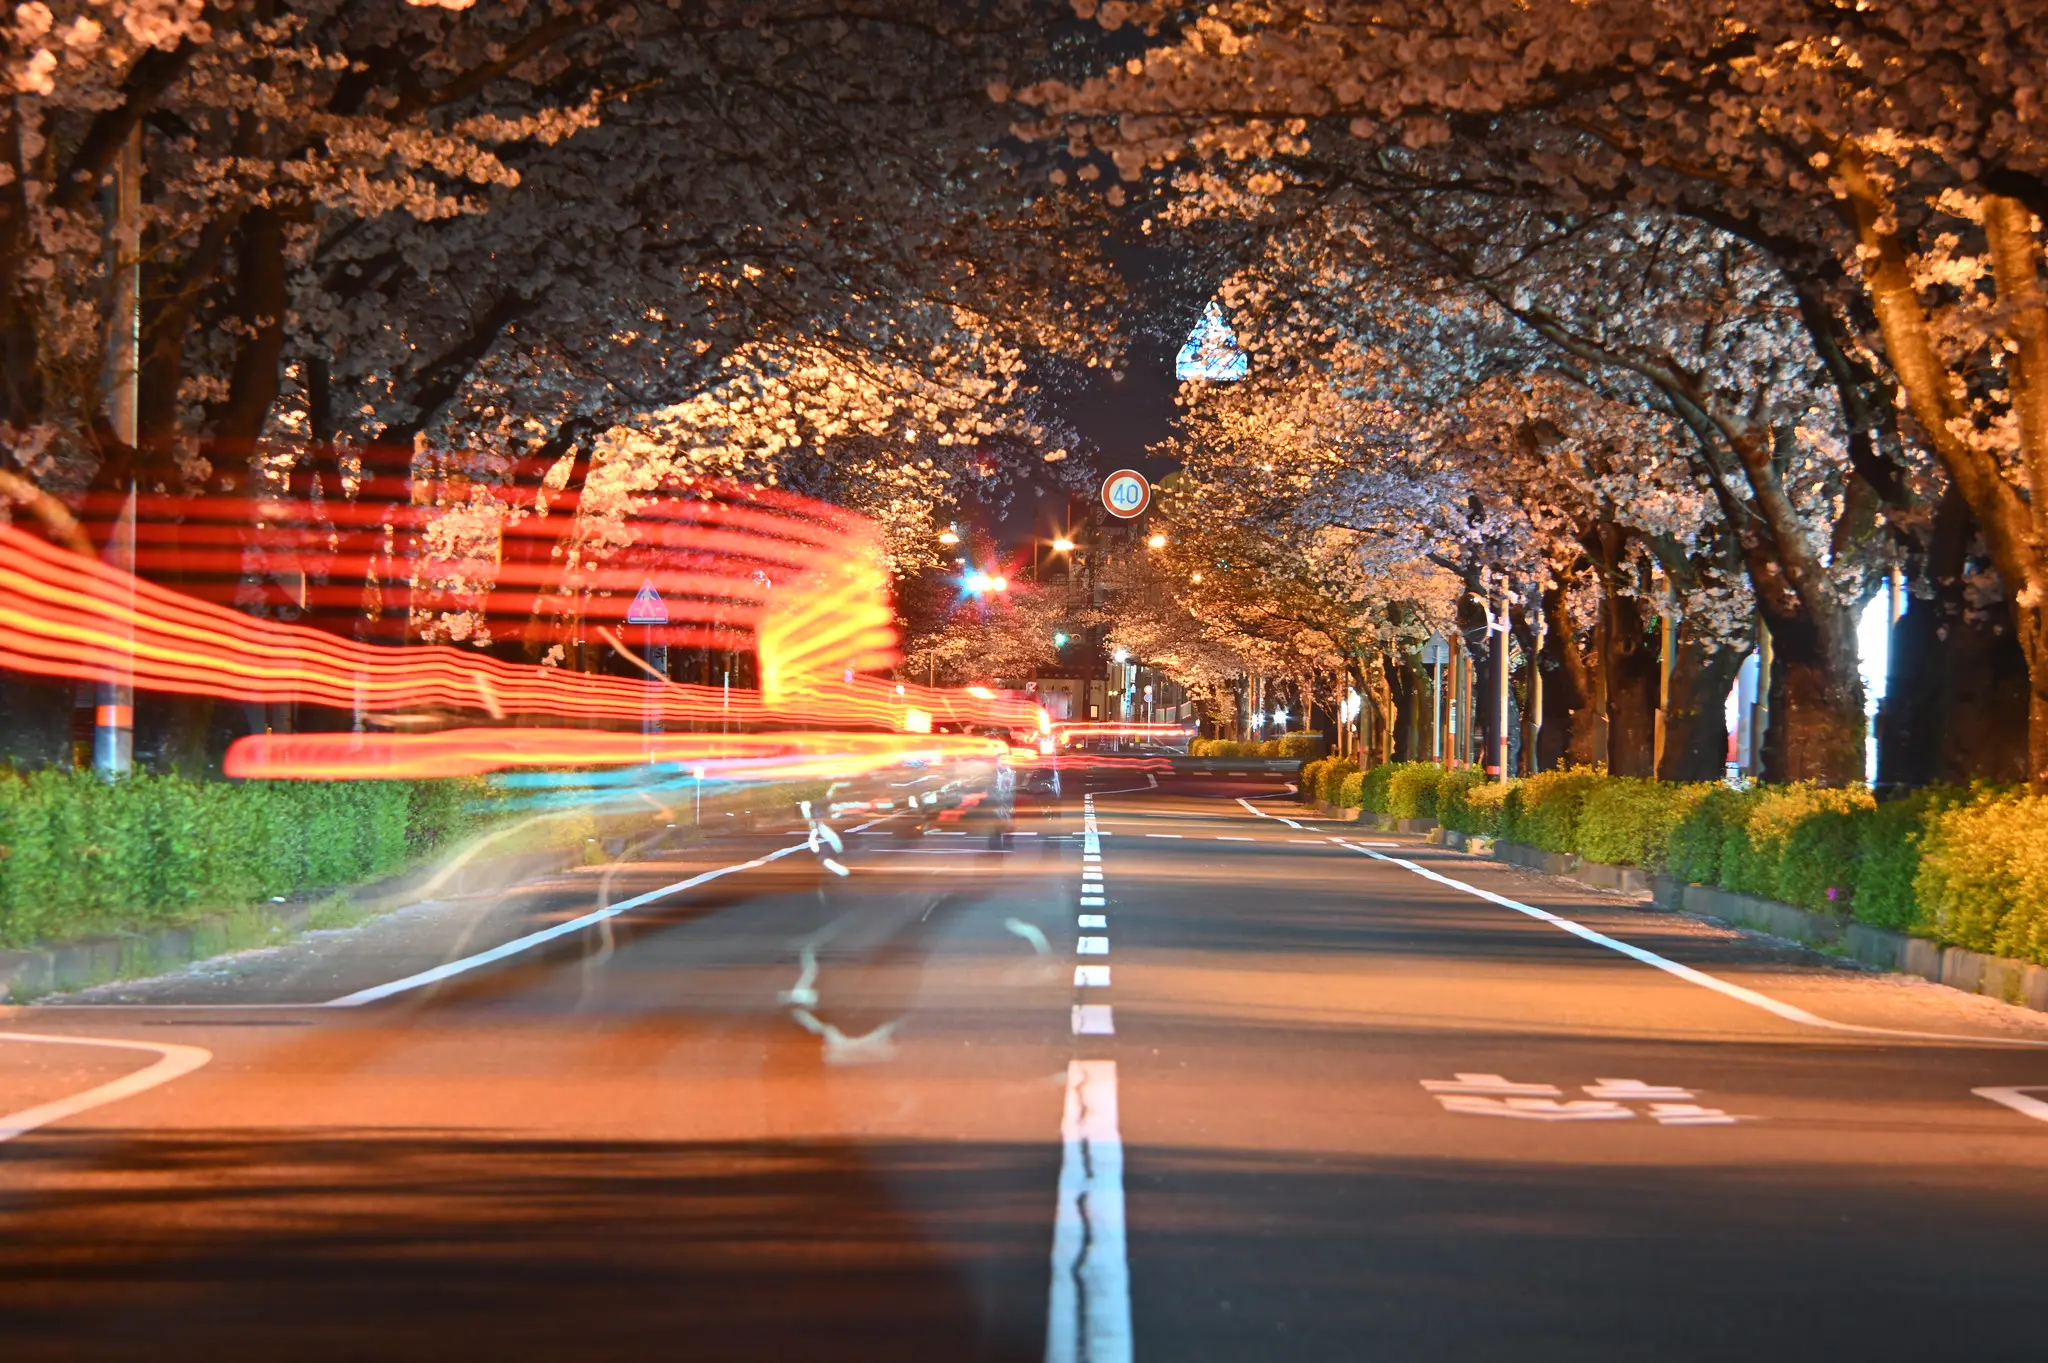 平成さくら通りの夜桜 | Auto NIKKOR Telephoto Zoom 8.5cmF4-25cm F4 ...